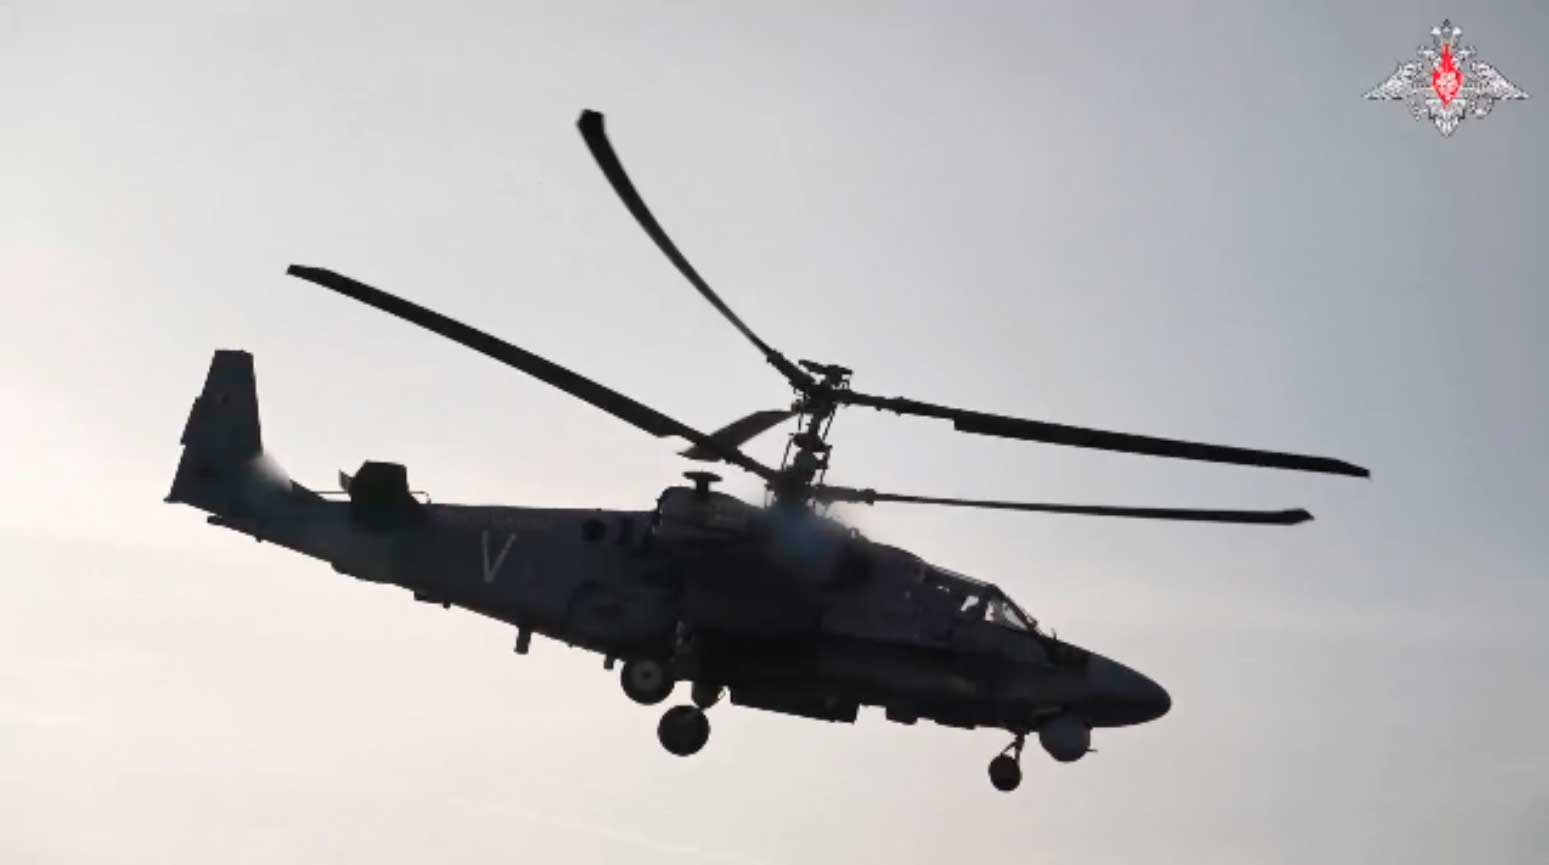 VÍDEO: Helicópteros de ataque Ka-52 faz ataque com foguetes na invasão da Ucrânia